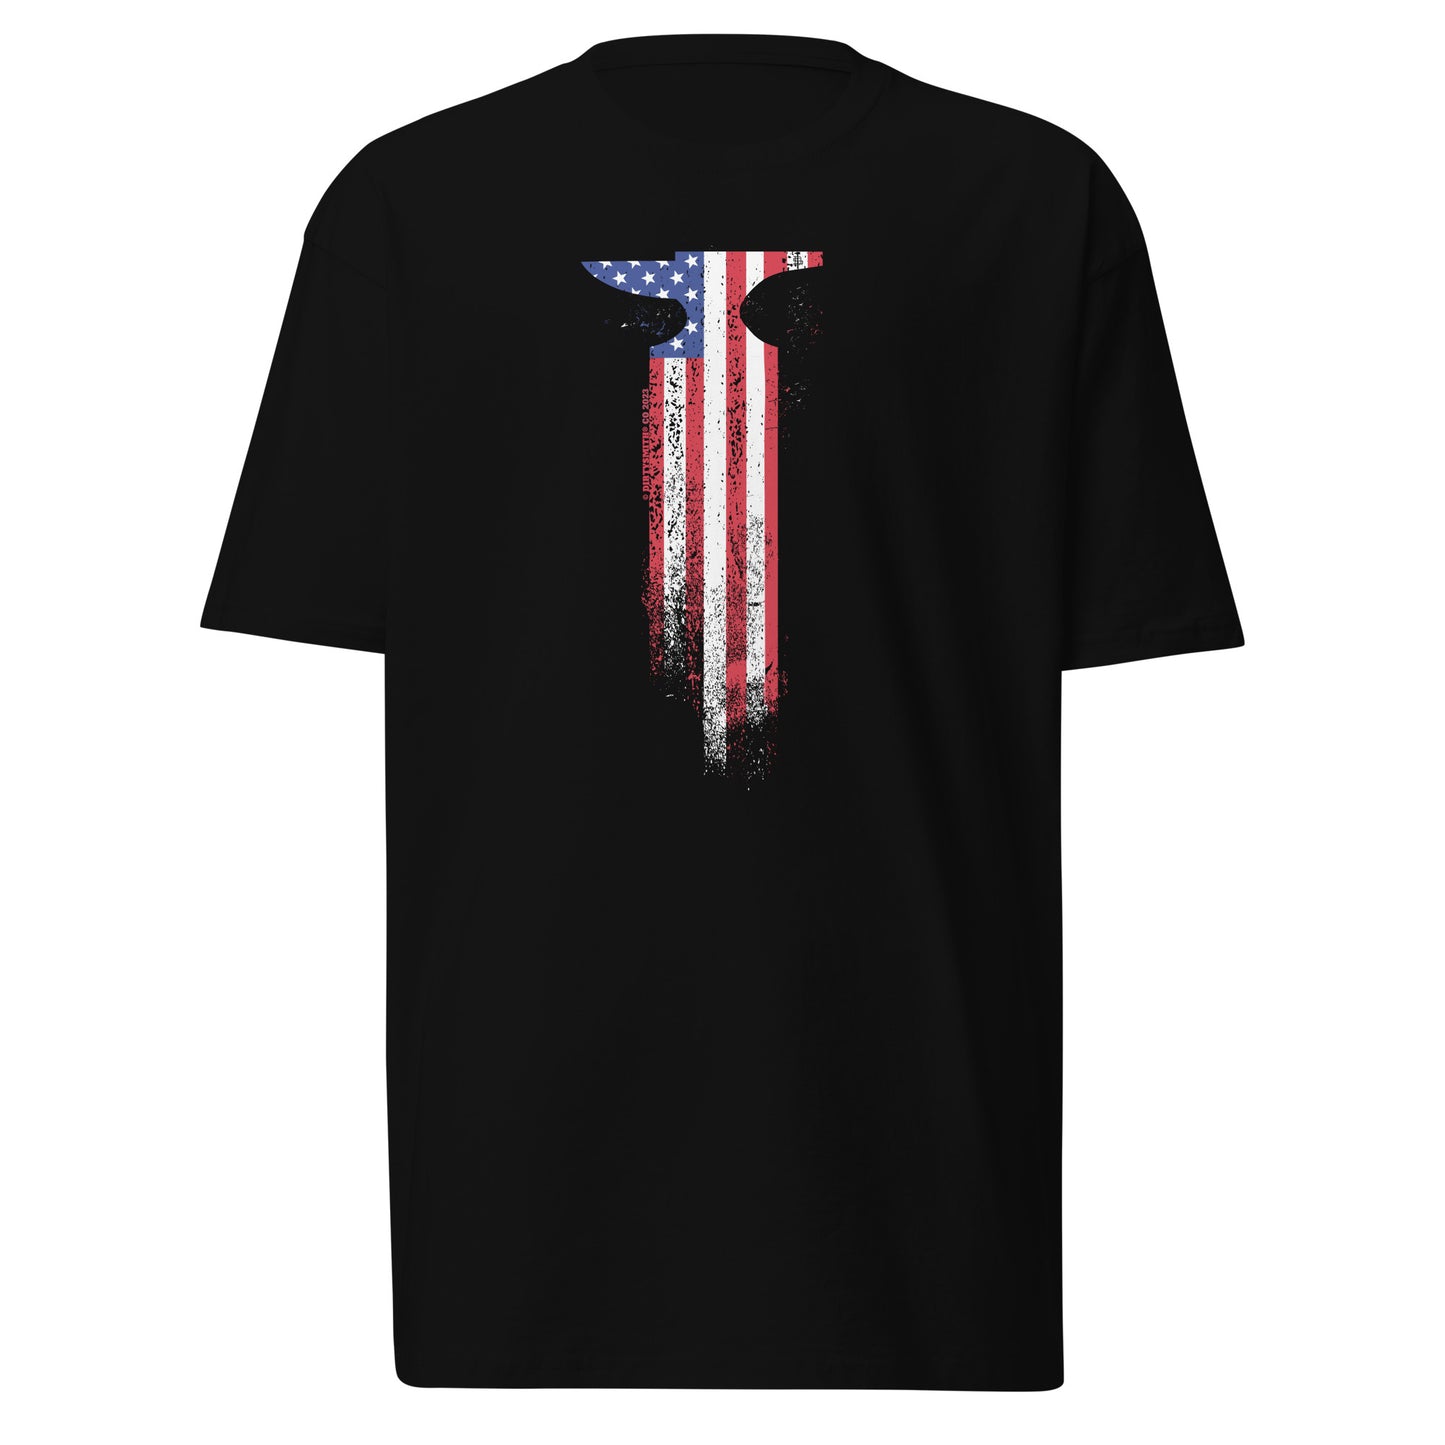 Dirty Smith USA Anvil Flag Shirt